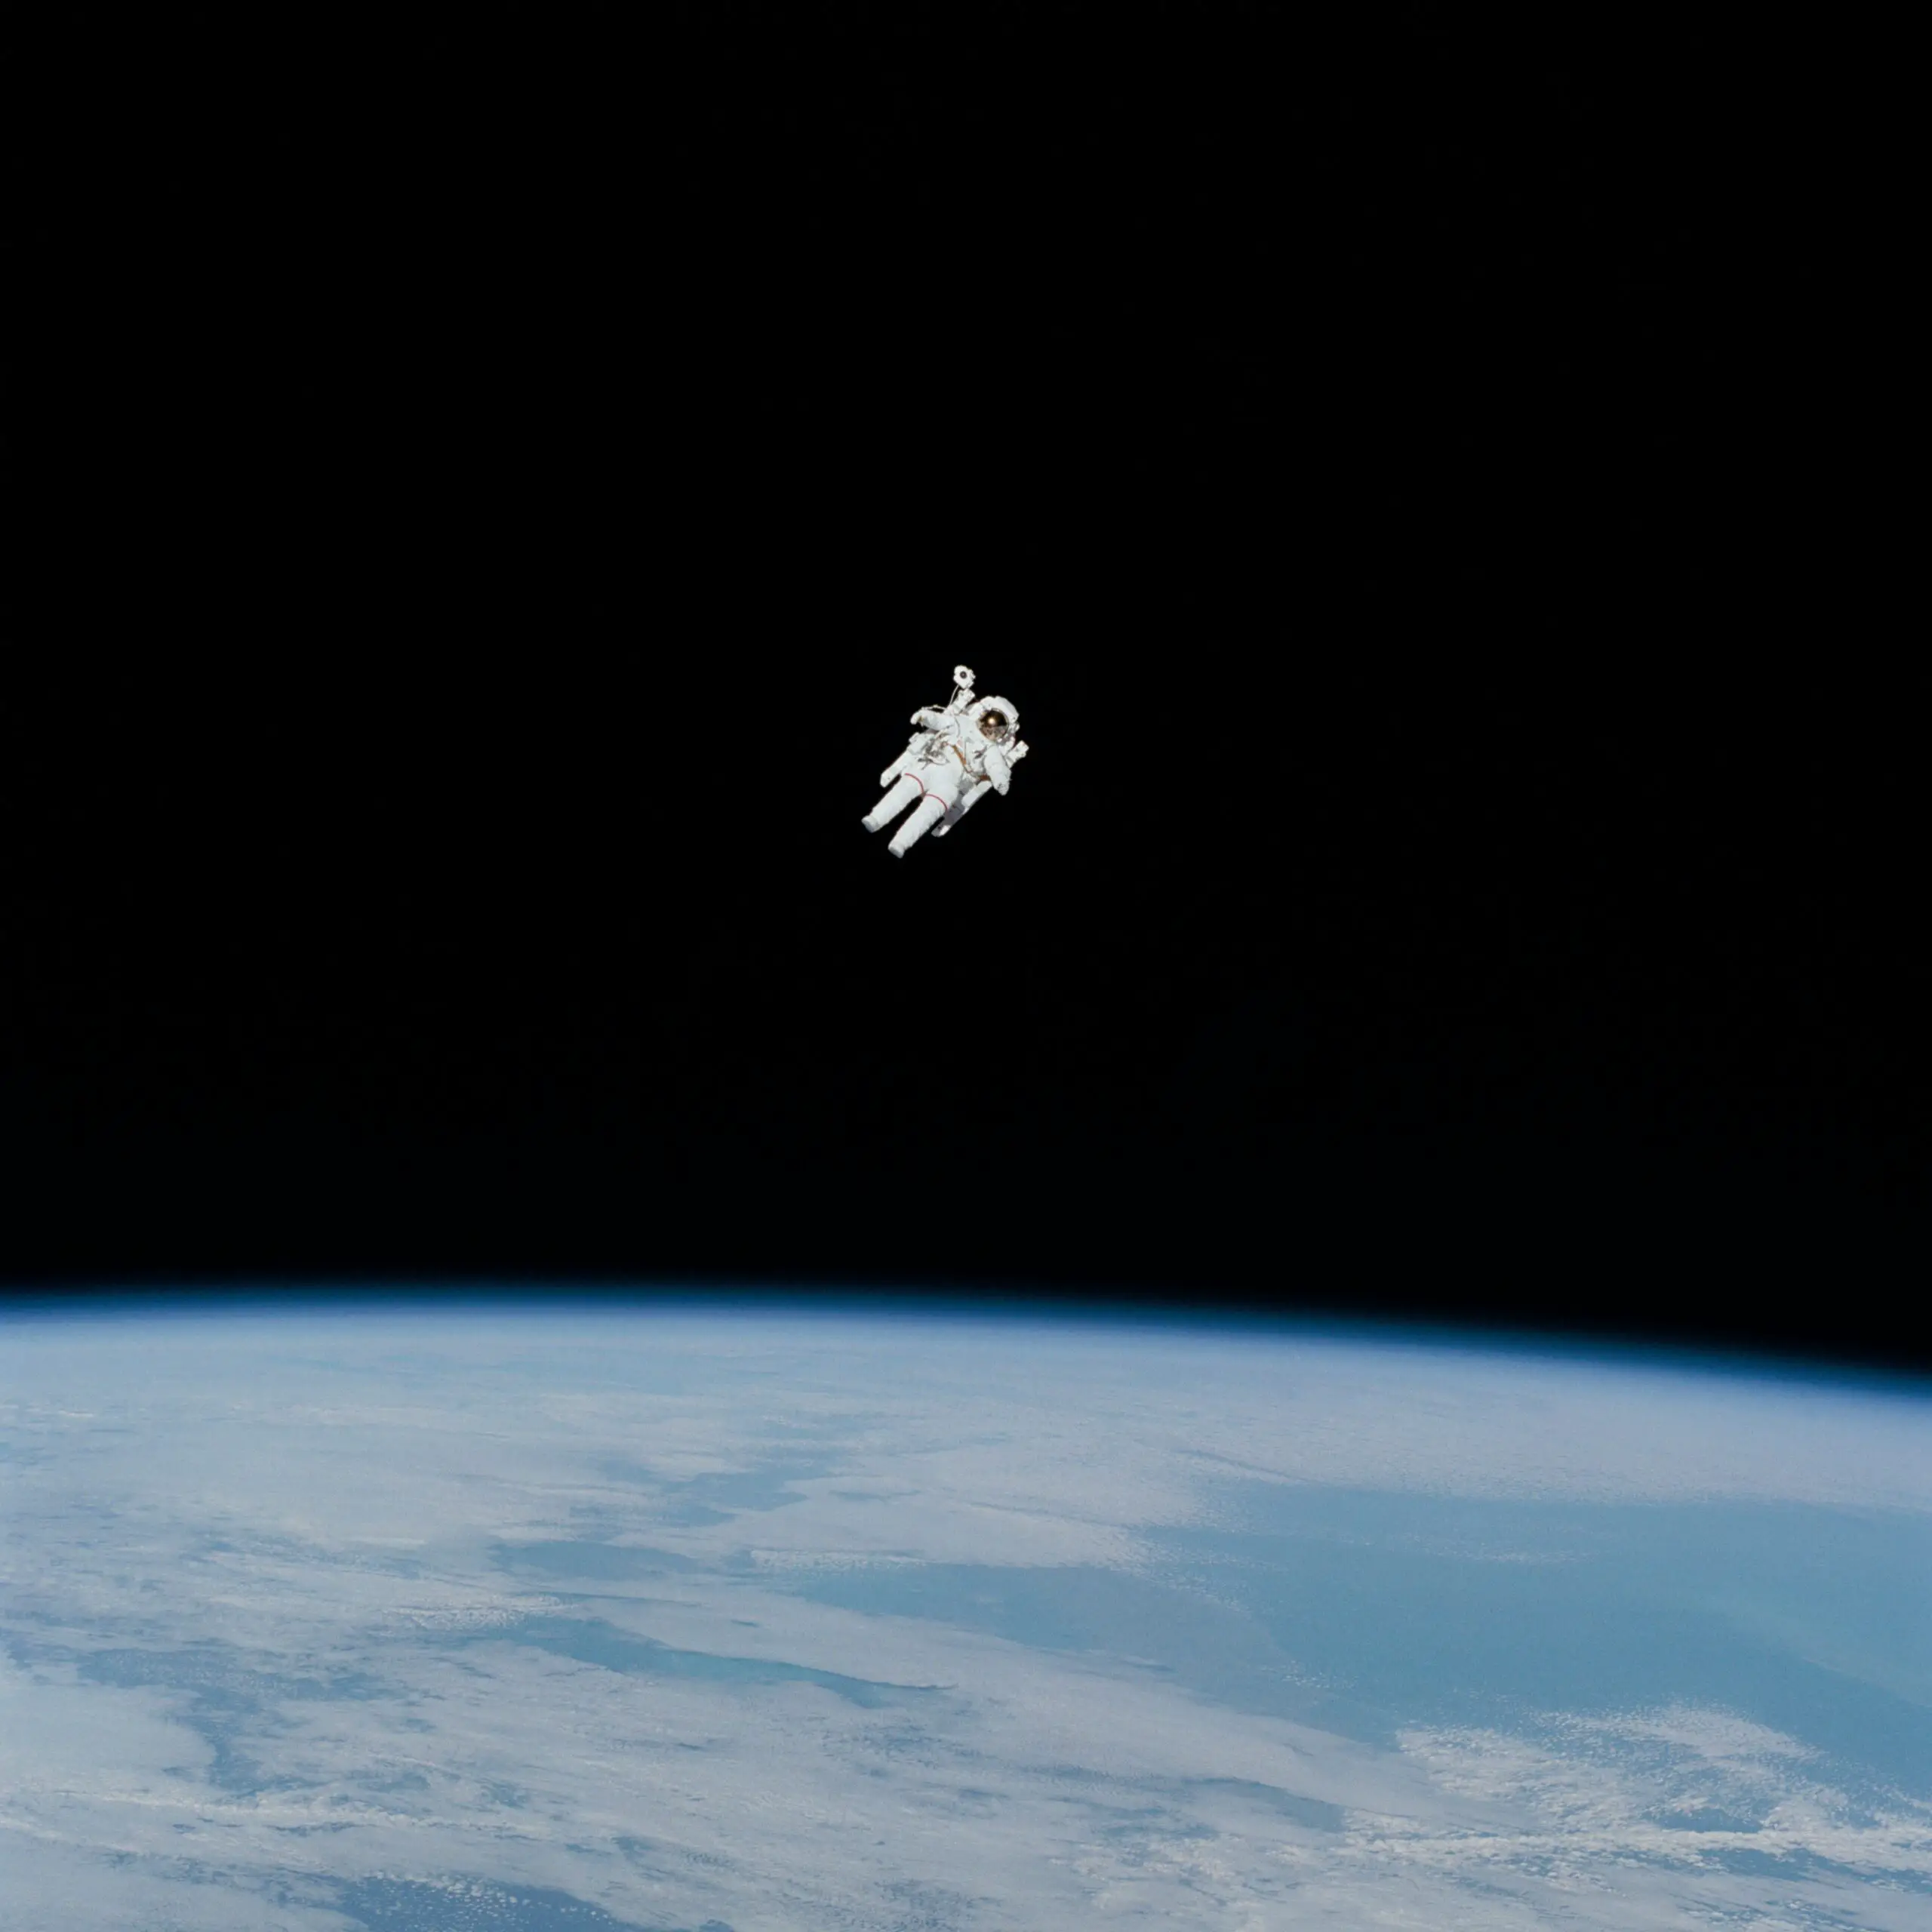 ¿Cuánto tiempo puede durar un ser humano en el espacio exterior sin traje espacial antes de morir? -Revista Interesante